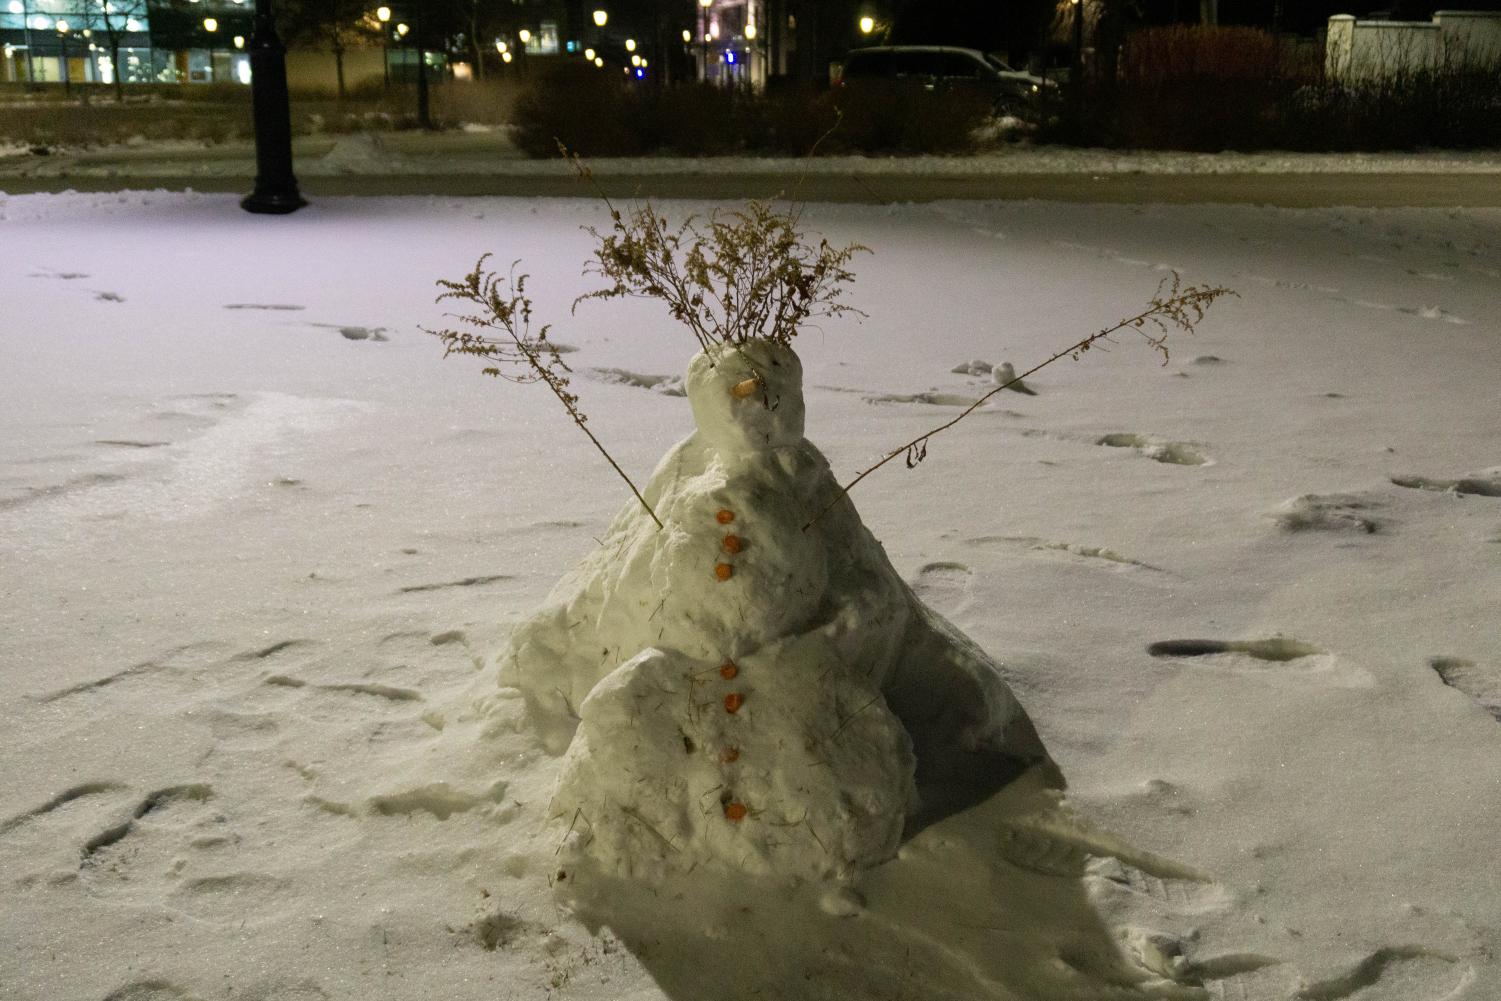 A short, cone-shaped snowman.